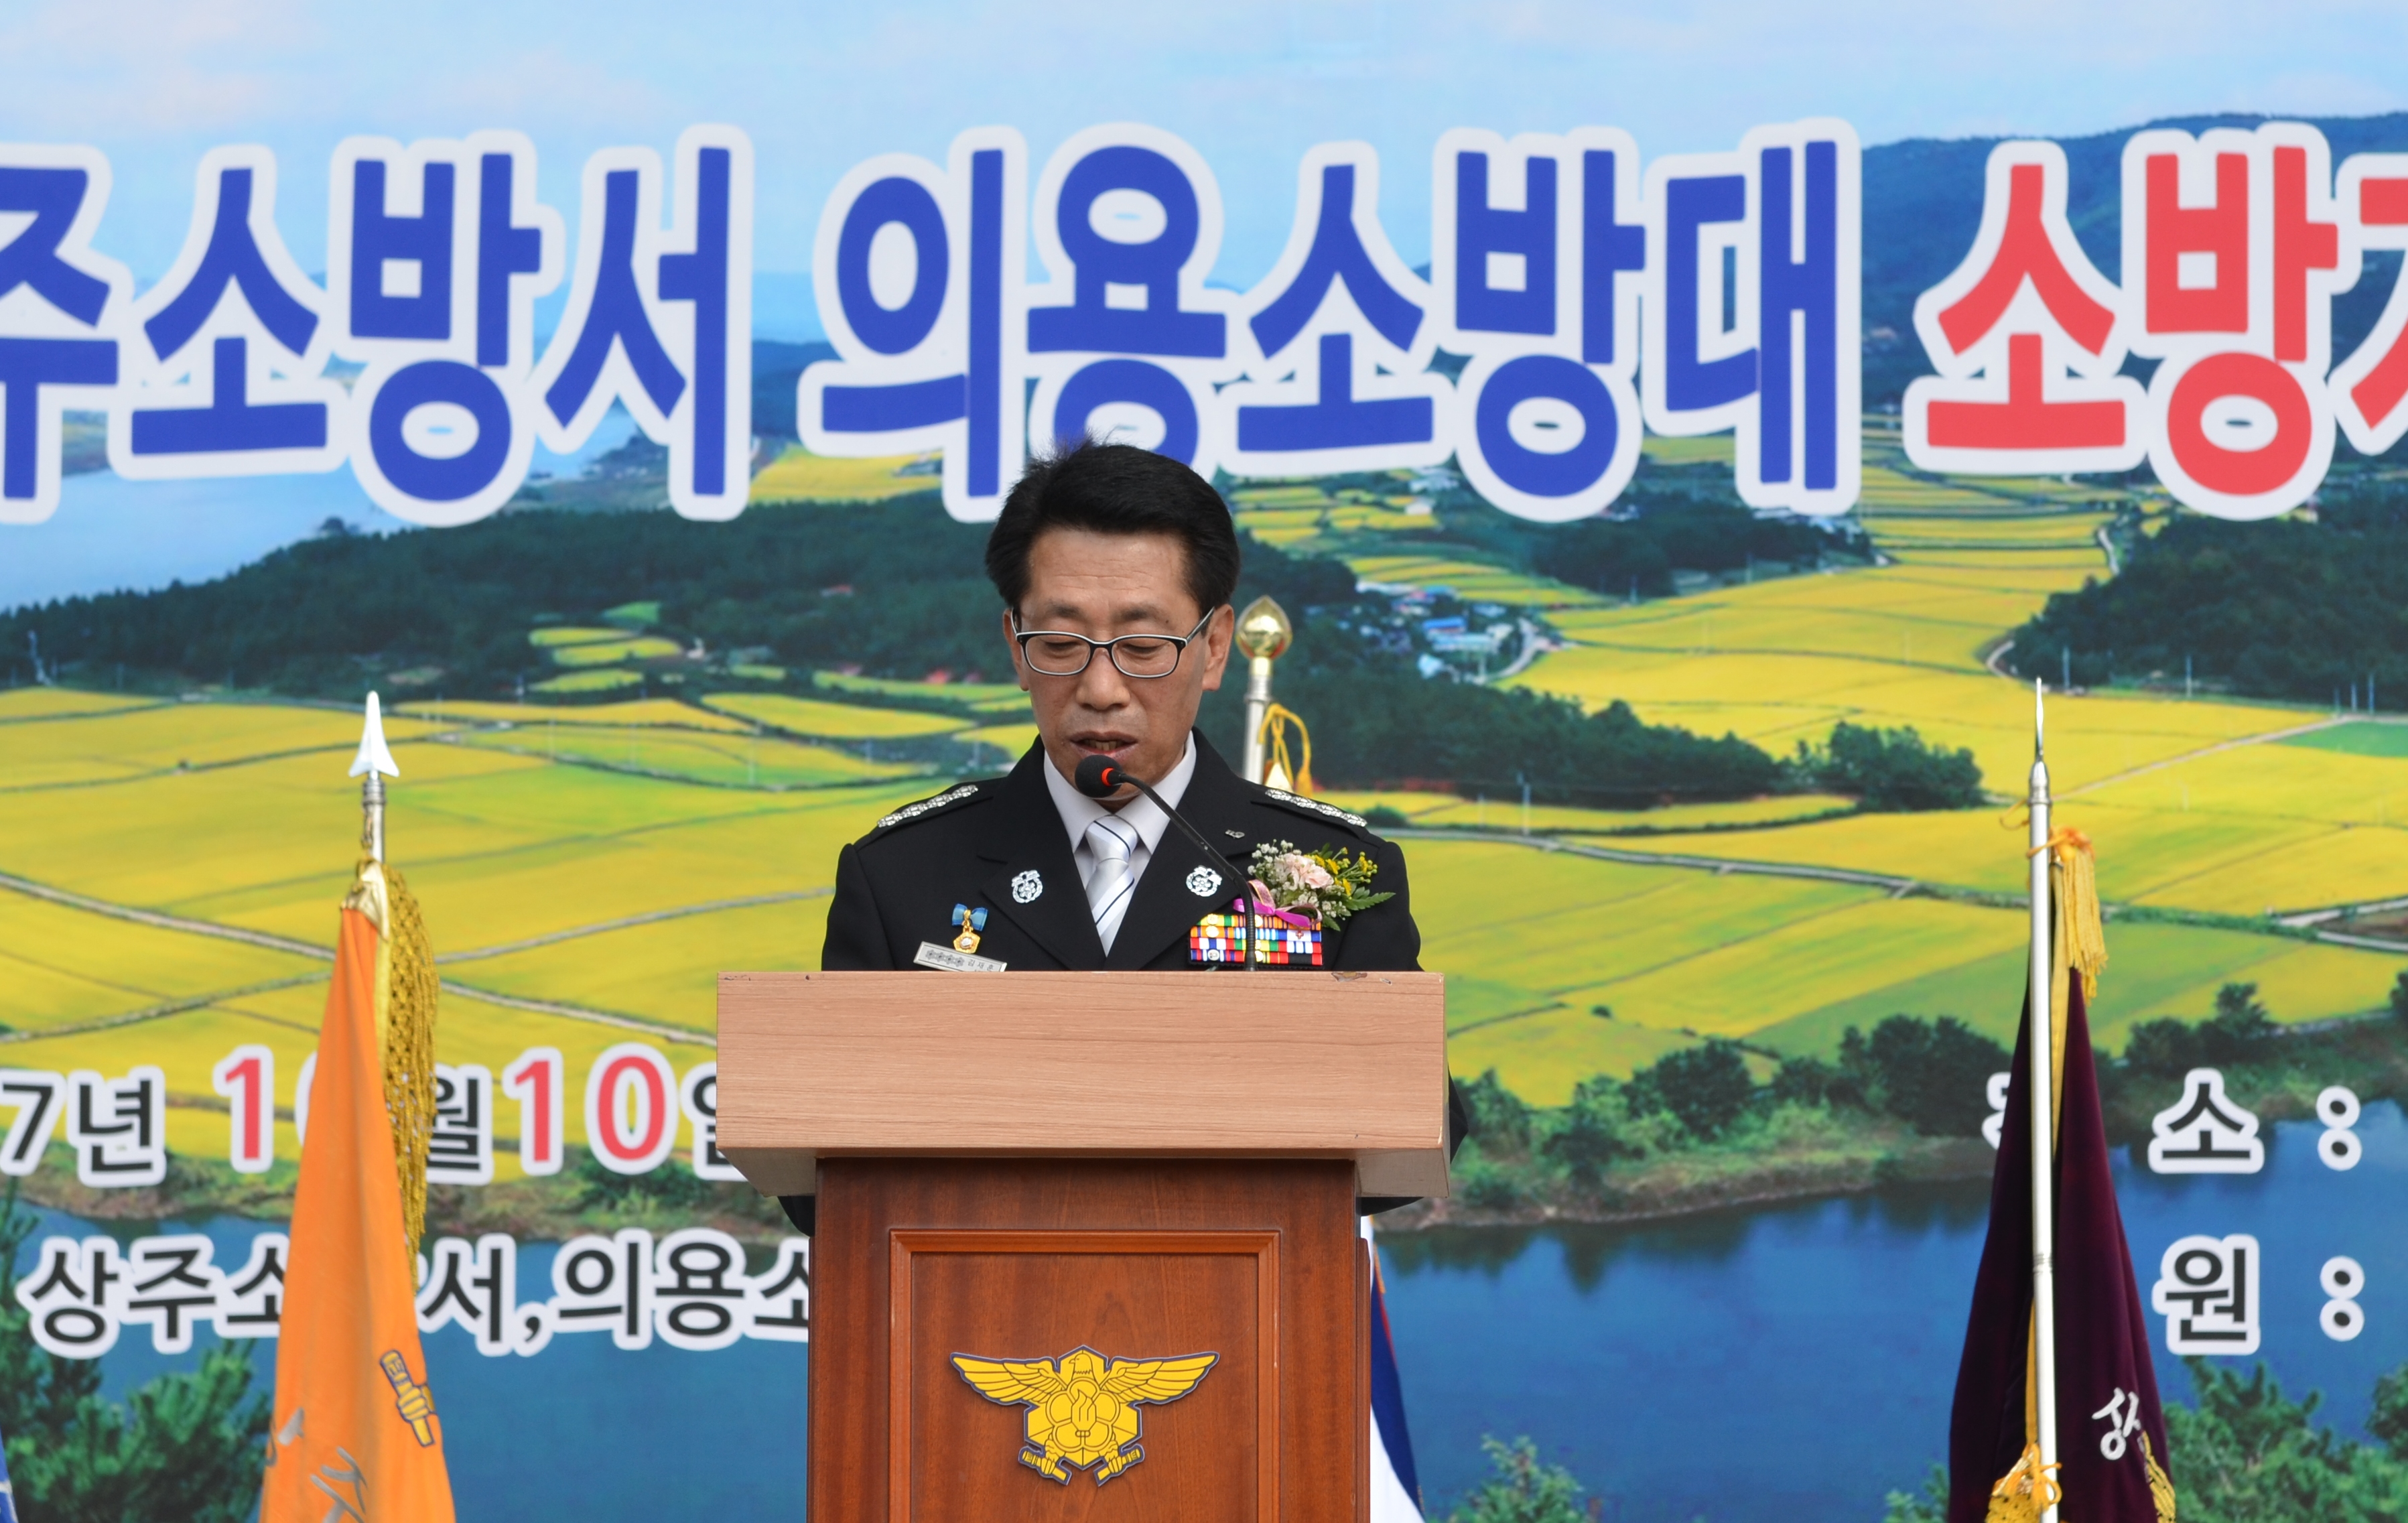 제9회 상주소방서 의용소방대 소방기술경연대회 개최